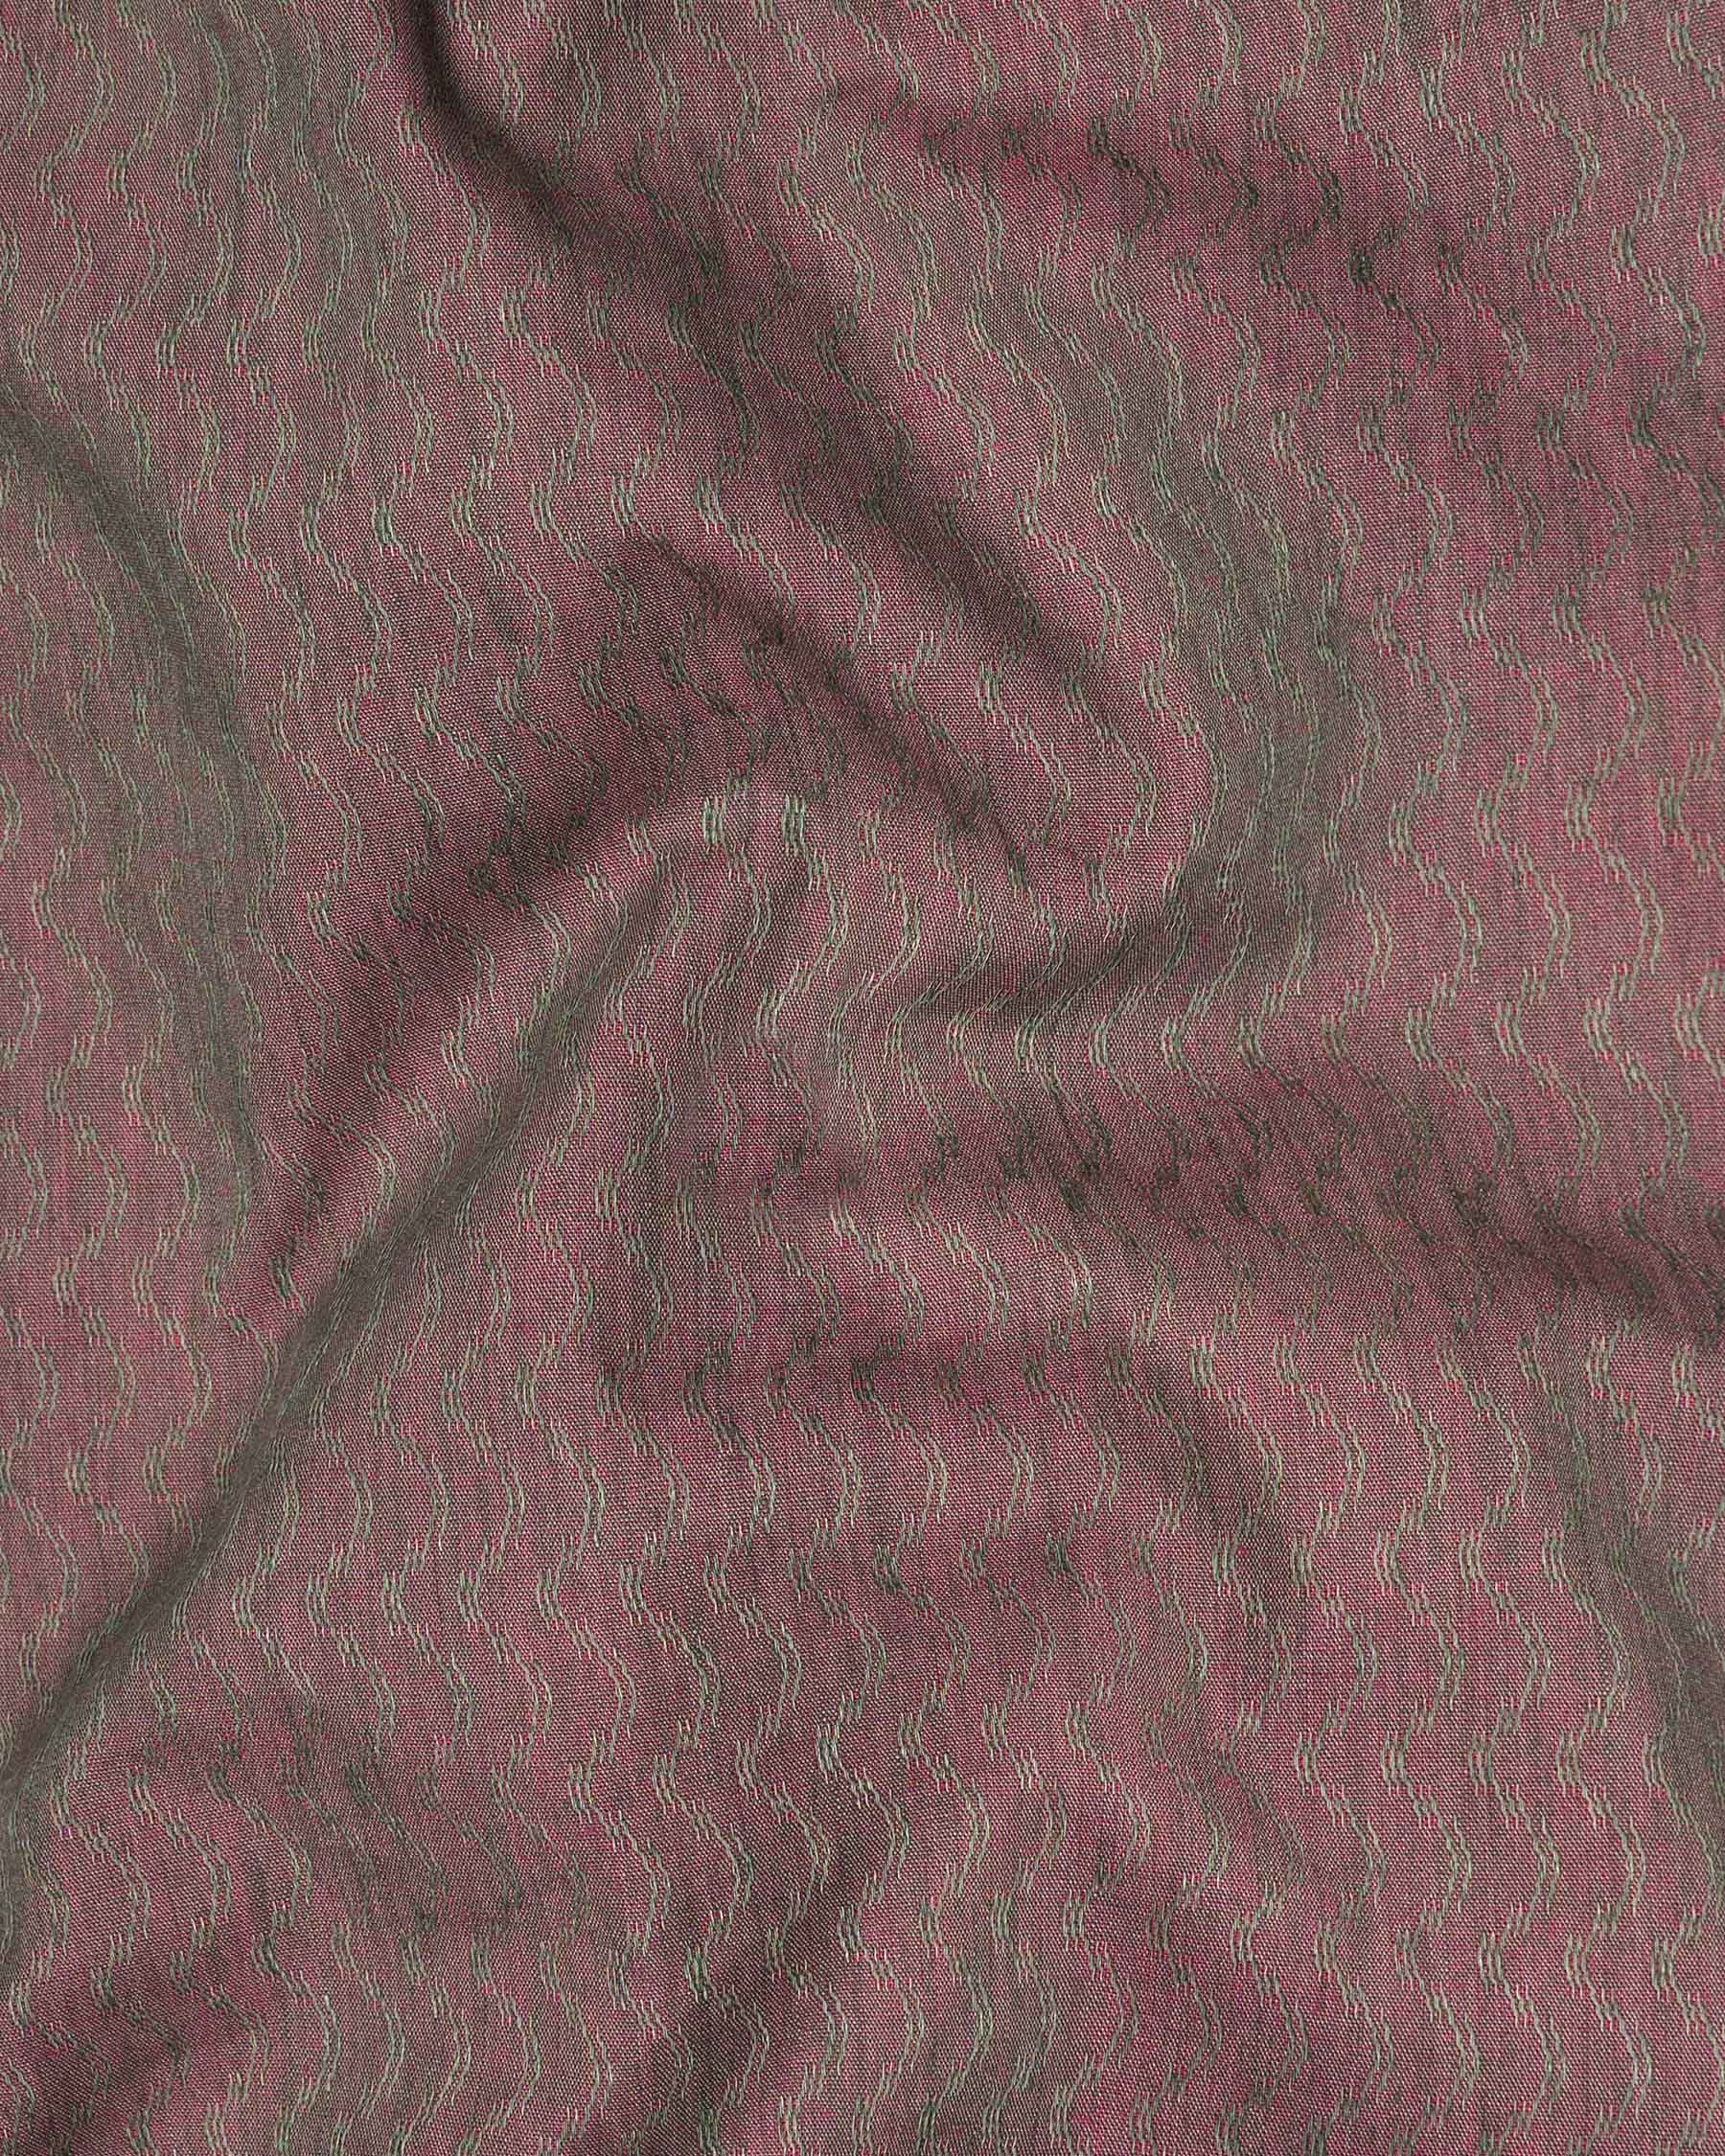 Copper Rose and Finch Green Two Tone Jacquard Premium Giza Cotton Shirt 6564-CA-38,6564-CA-38,6564-CA-39,6564-CA-39,6564-CA-40,6564-CA-40,6564-CA-42,6564-CA-42,6564-CA-44,6564-CA-44,6564-CA-46,6564-CA-46,6564-CA-48,6564-CA-48,6564-CA-50,6564-CA-50,6564-CA-52,6564-CA-52